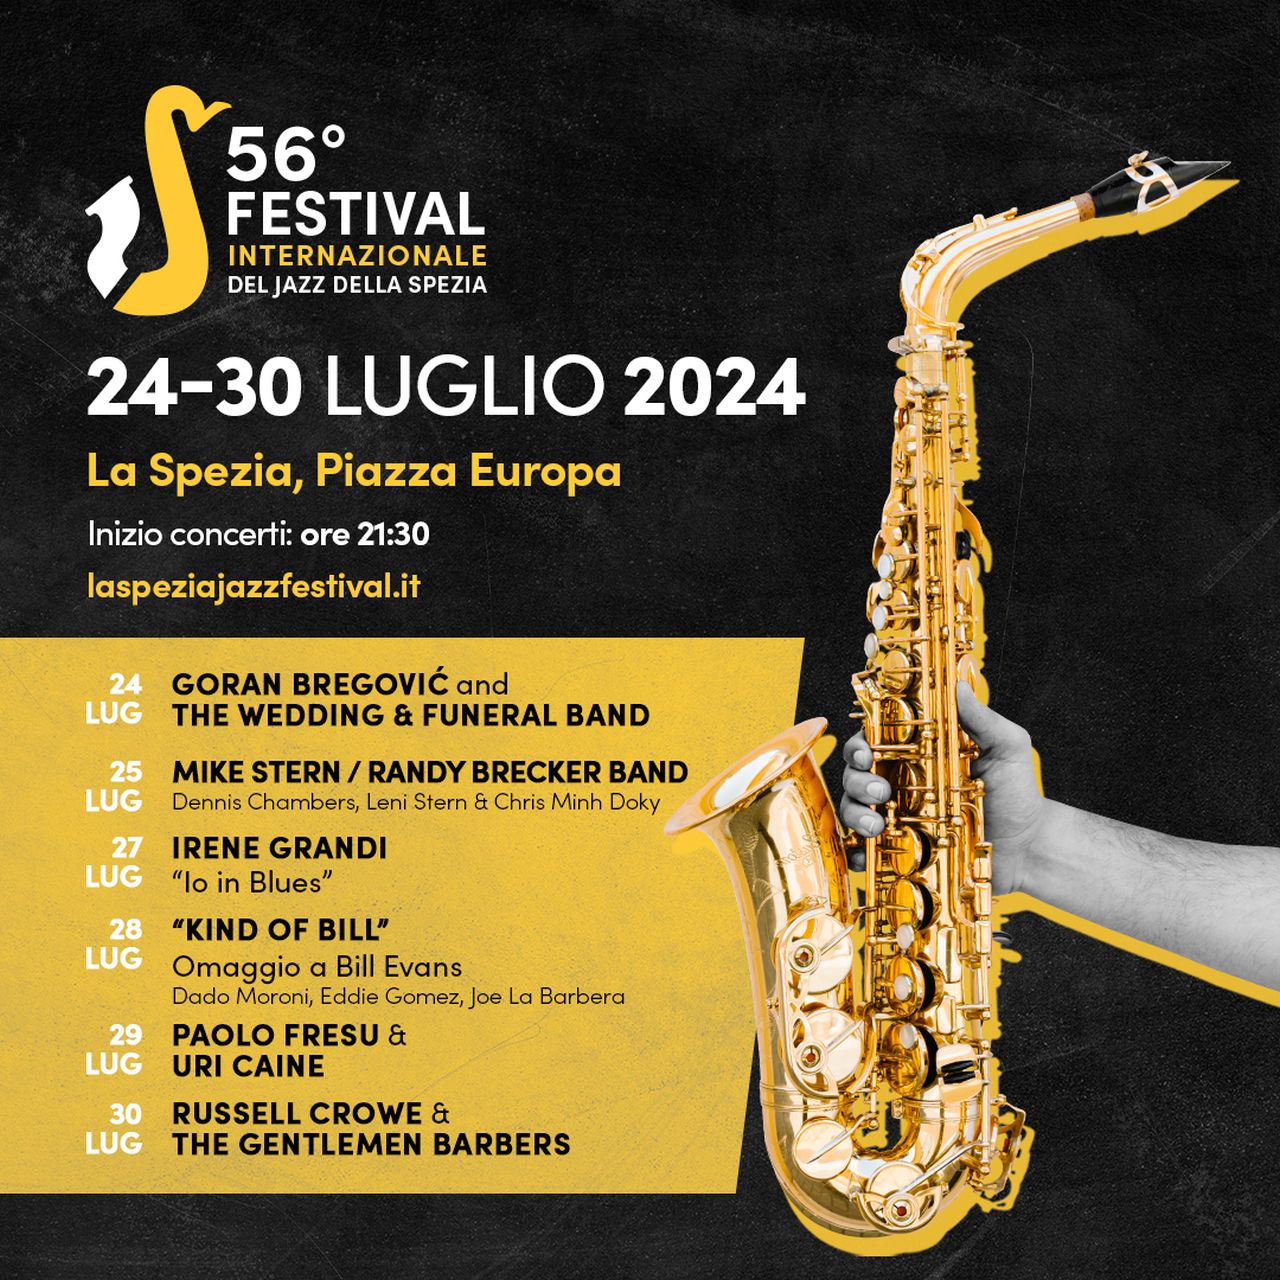 Dal 24 al 30 luglio a La Spezia si terrà la 56ª edizione del festival internazionale di jazz